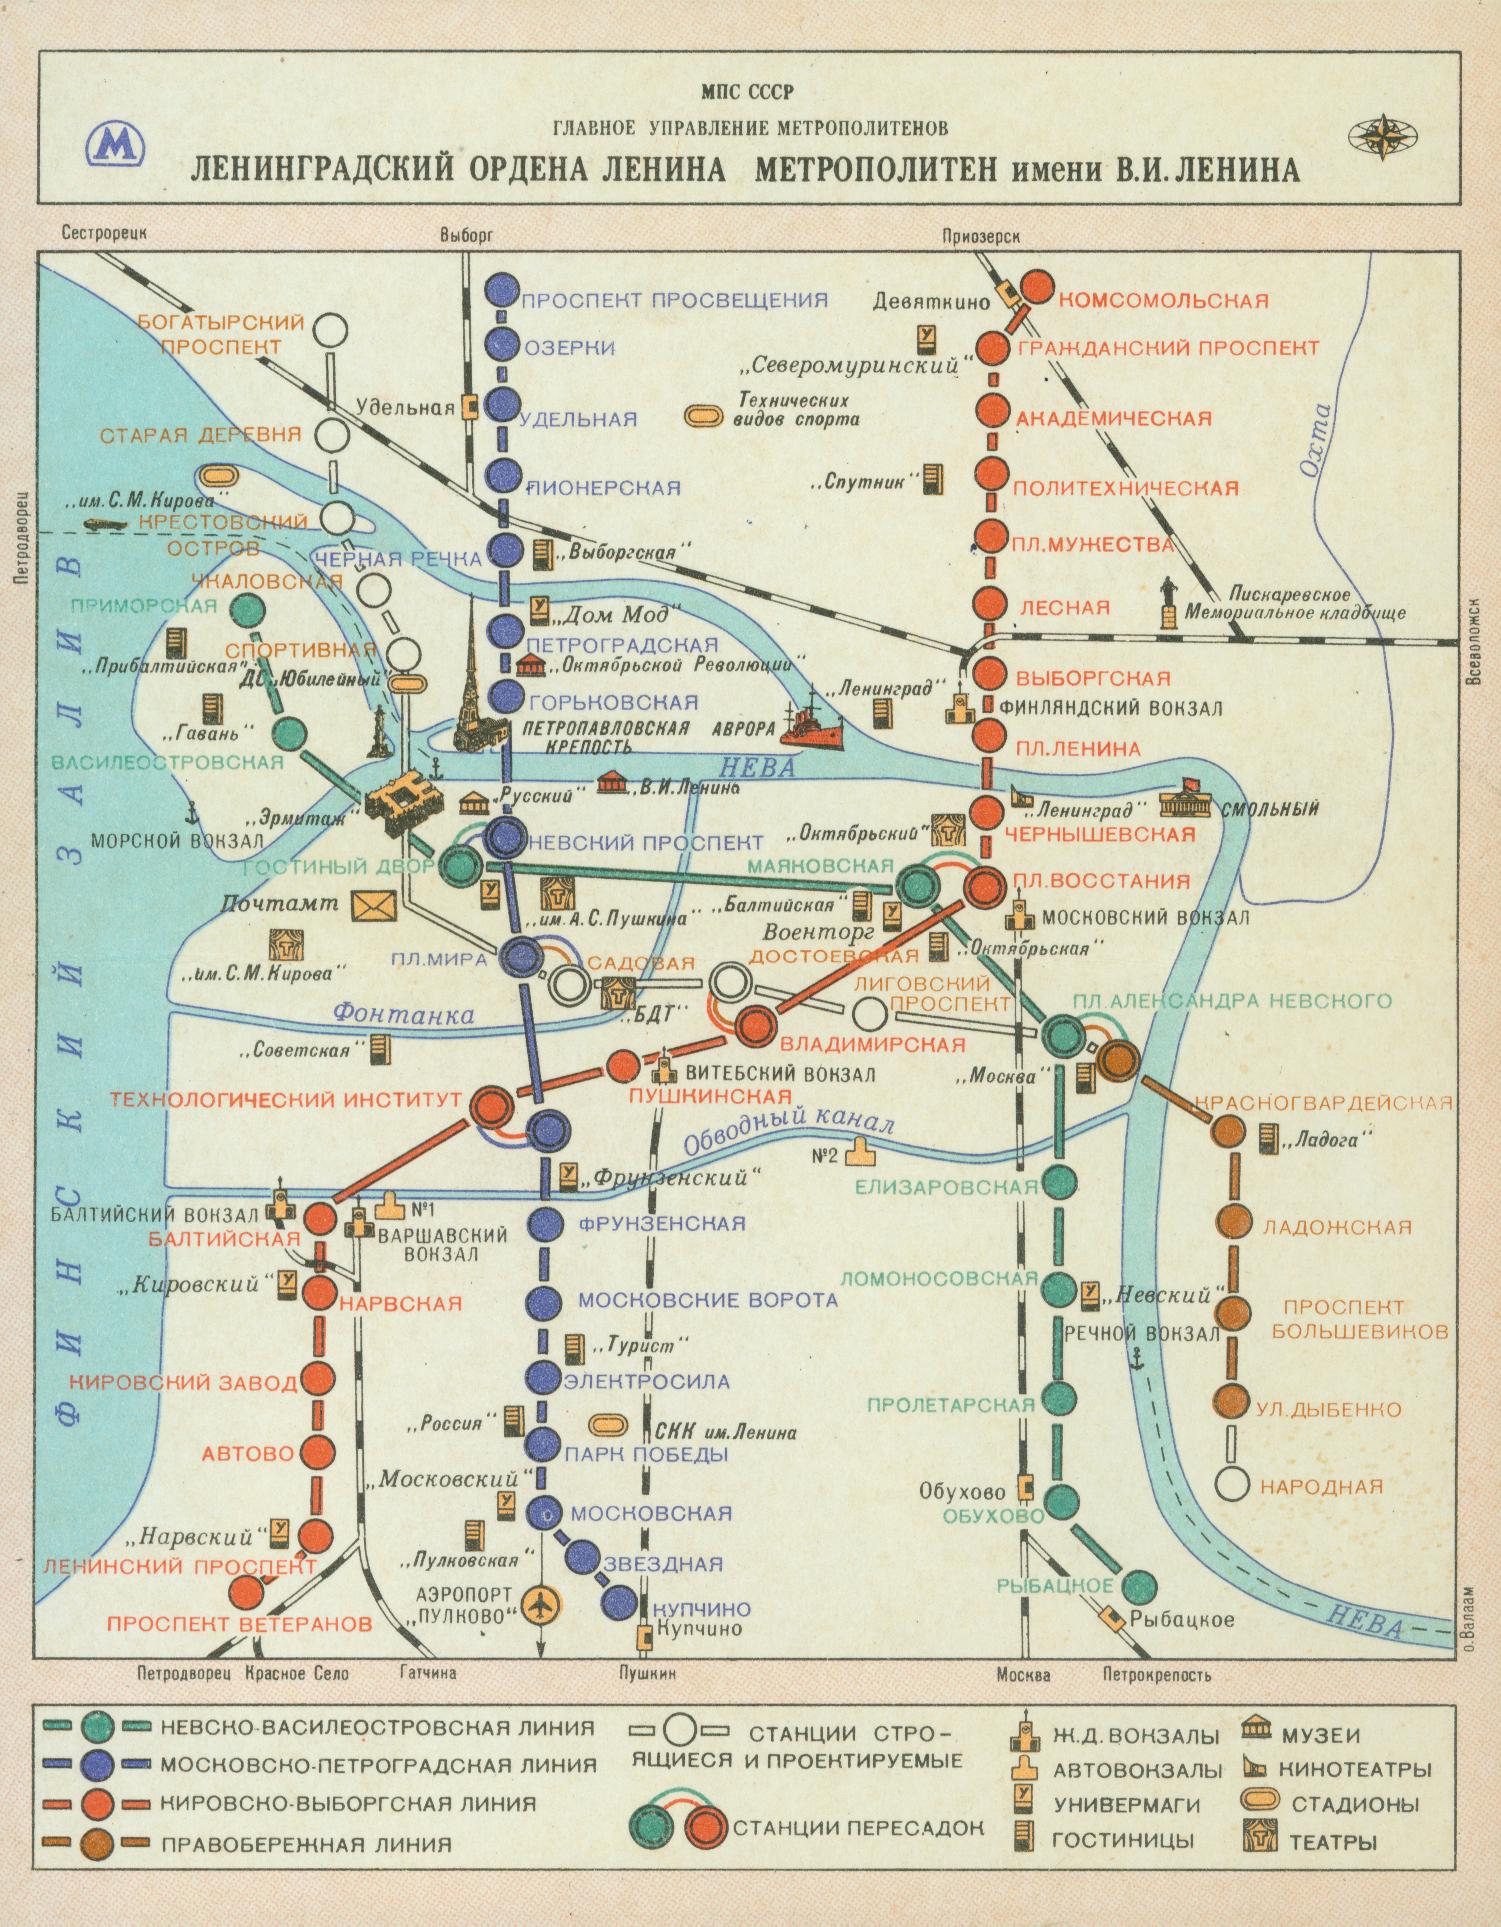 Sankt-Peterburg — Metro — Maps